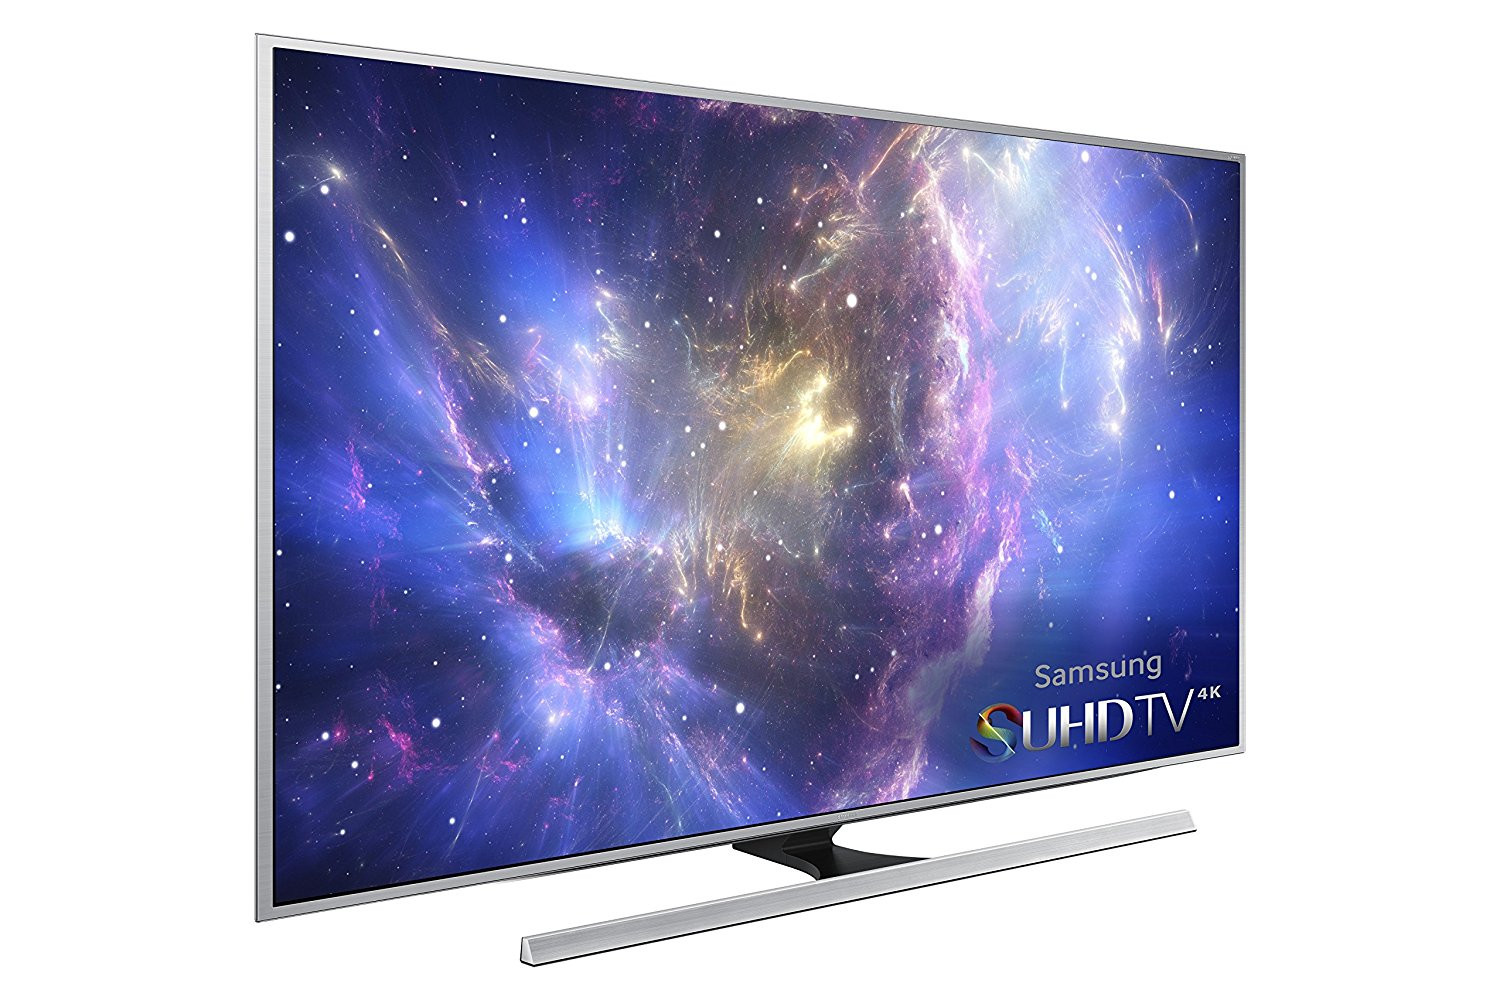 Samsung UN55JS8500 55-Inch 4K HD 3D Smart LED TV (2015 Model)